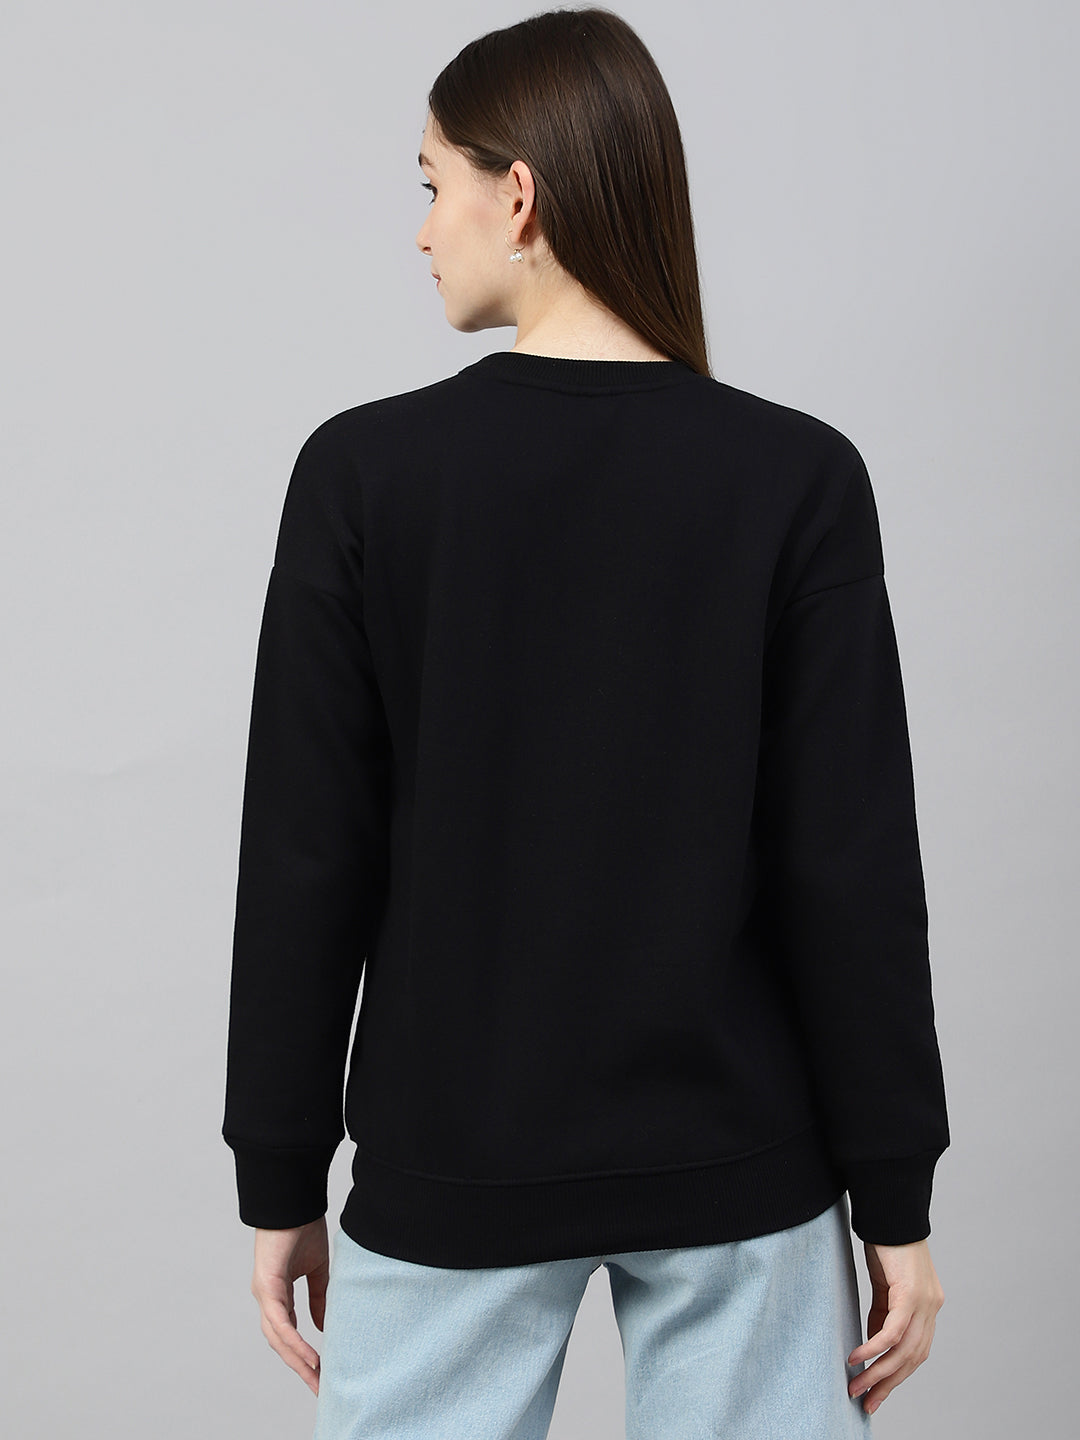 Black Drop Shoulder Sweatshirt